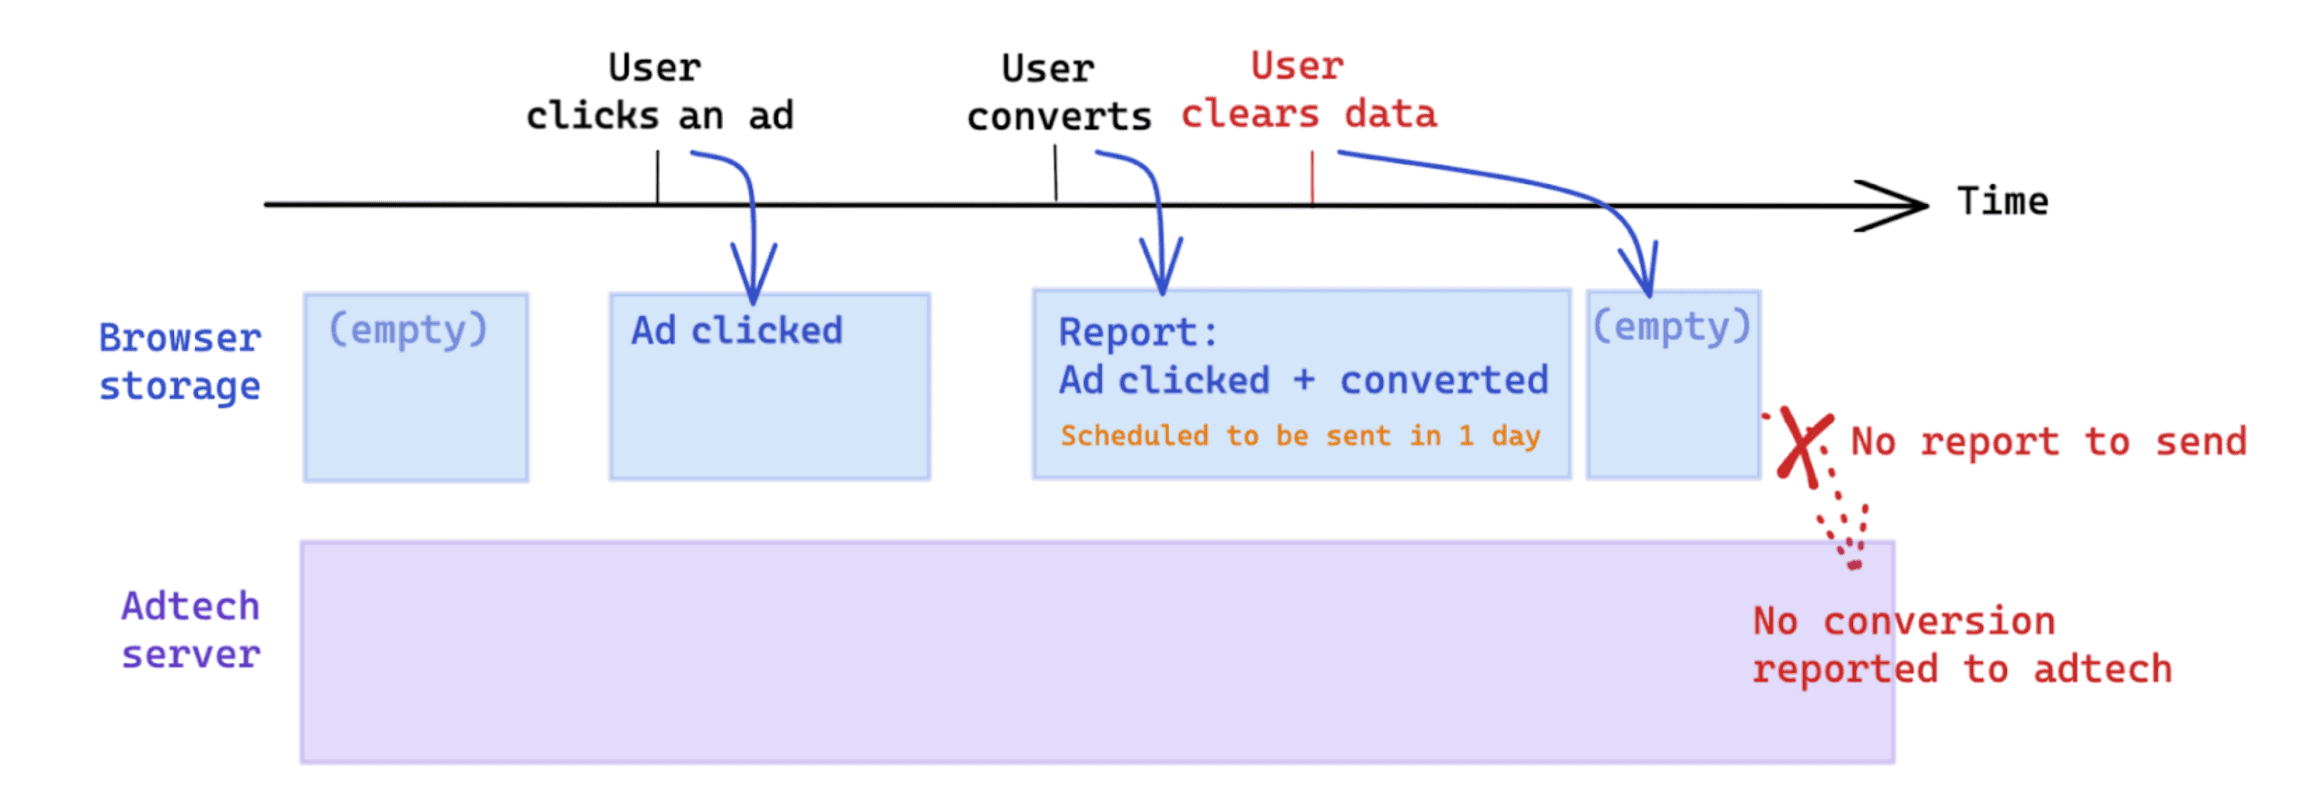 A limpeza de dados iniciada pelo usuário após uma conversão afeta a medição com base na API Attribution Reporting.